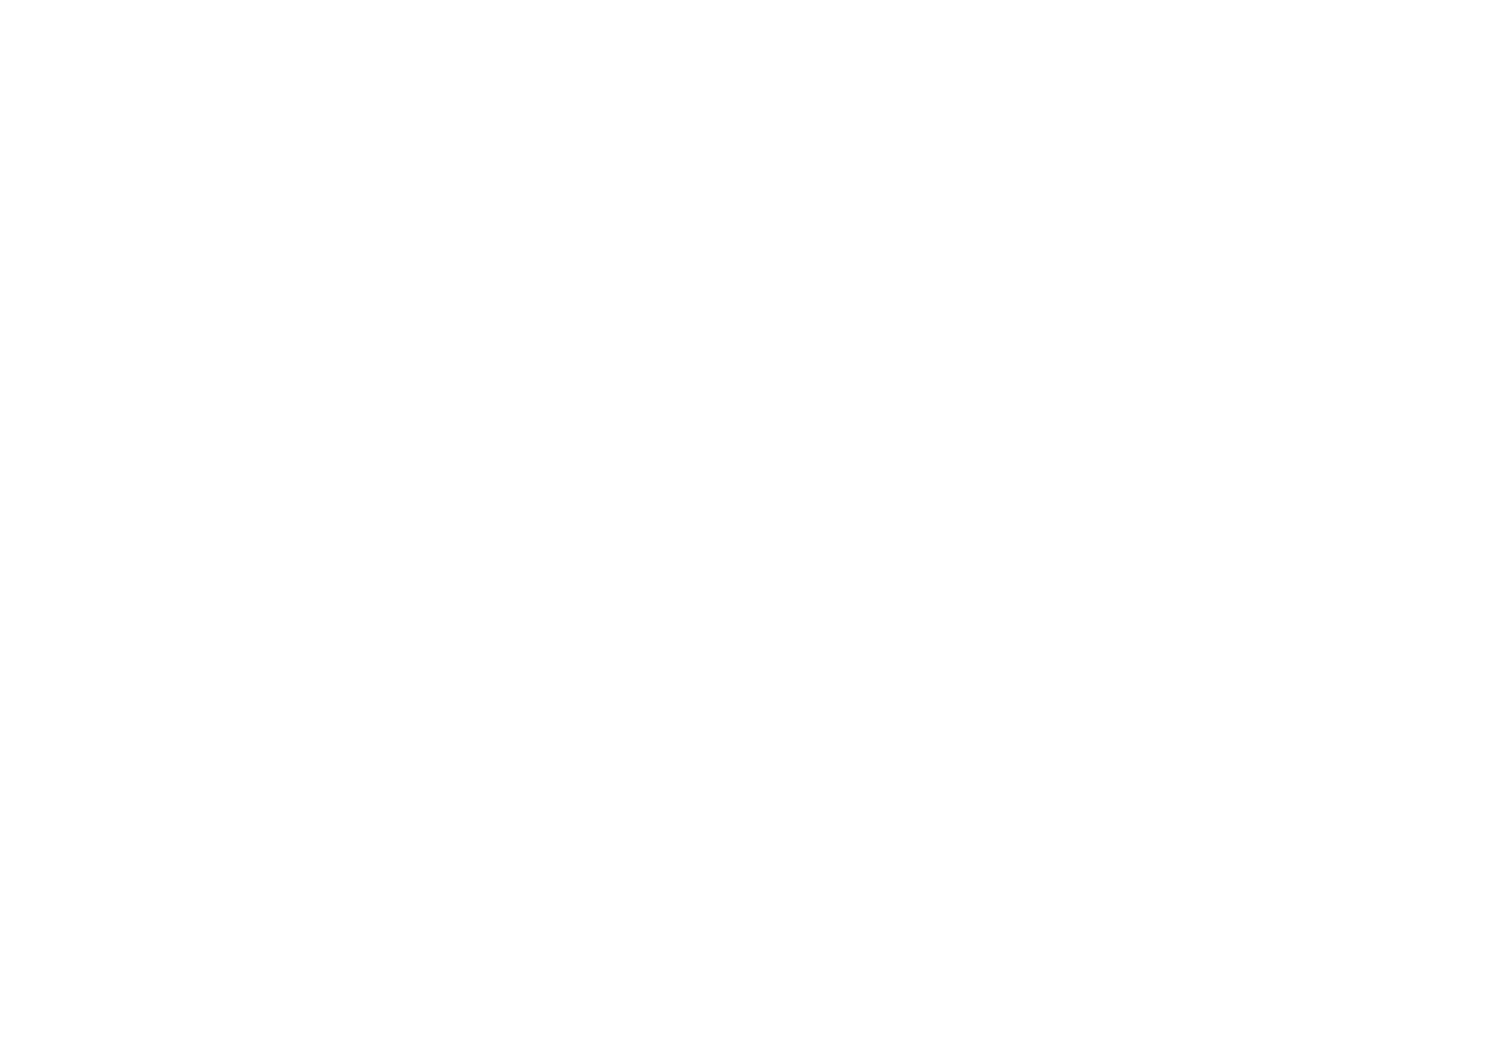 Frame by Frame | Fotograf:innen in Deiner Nähe